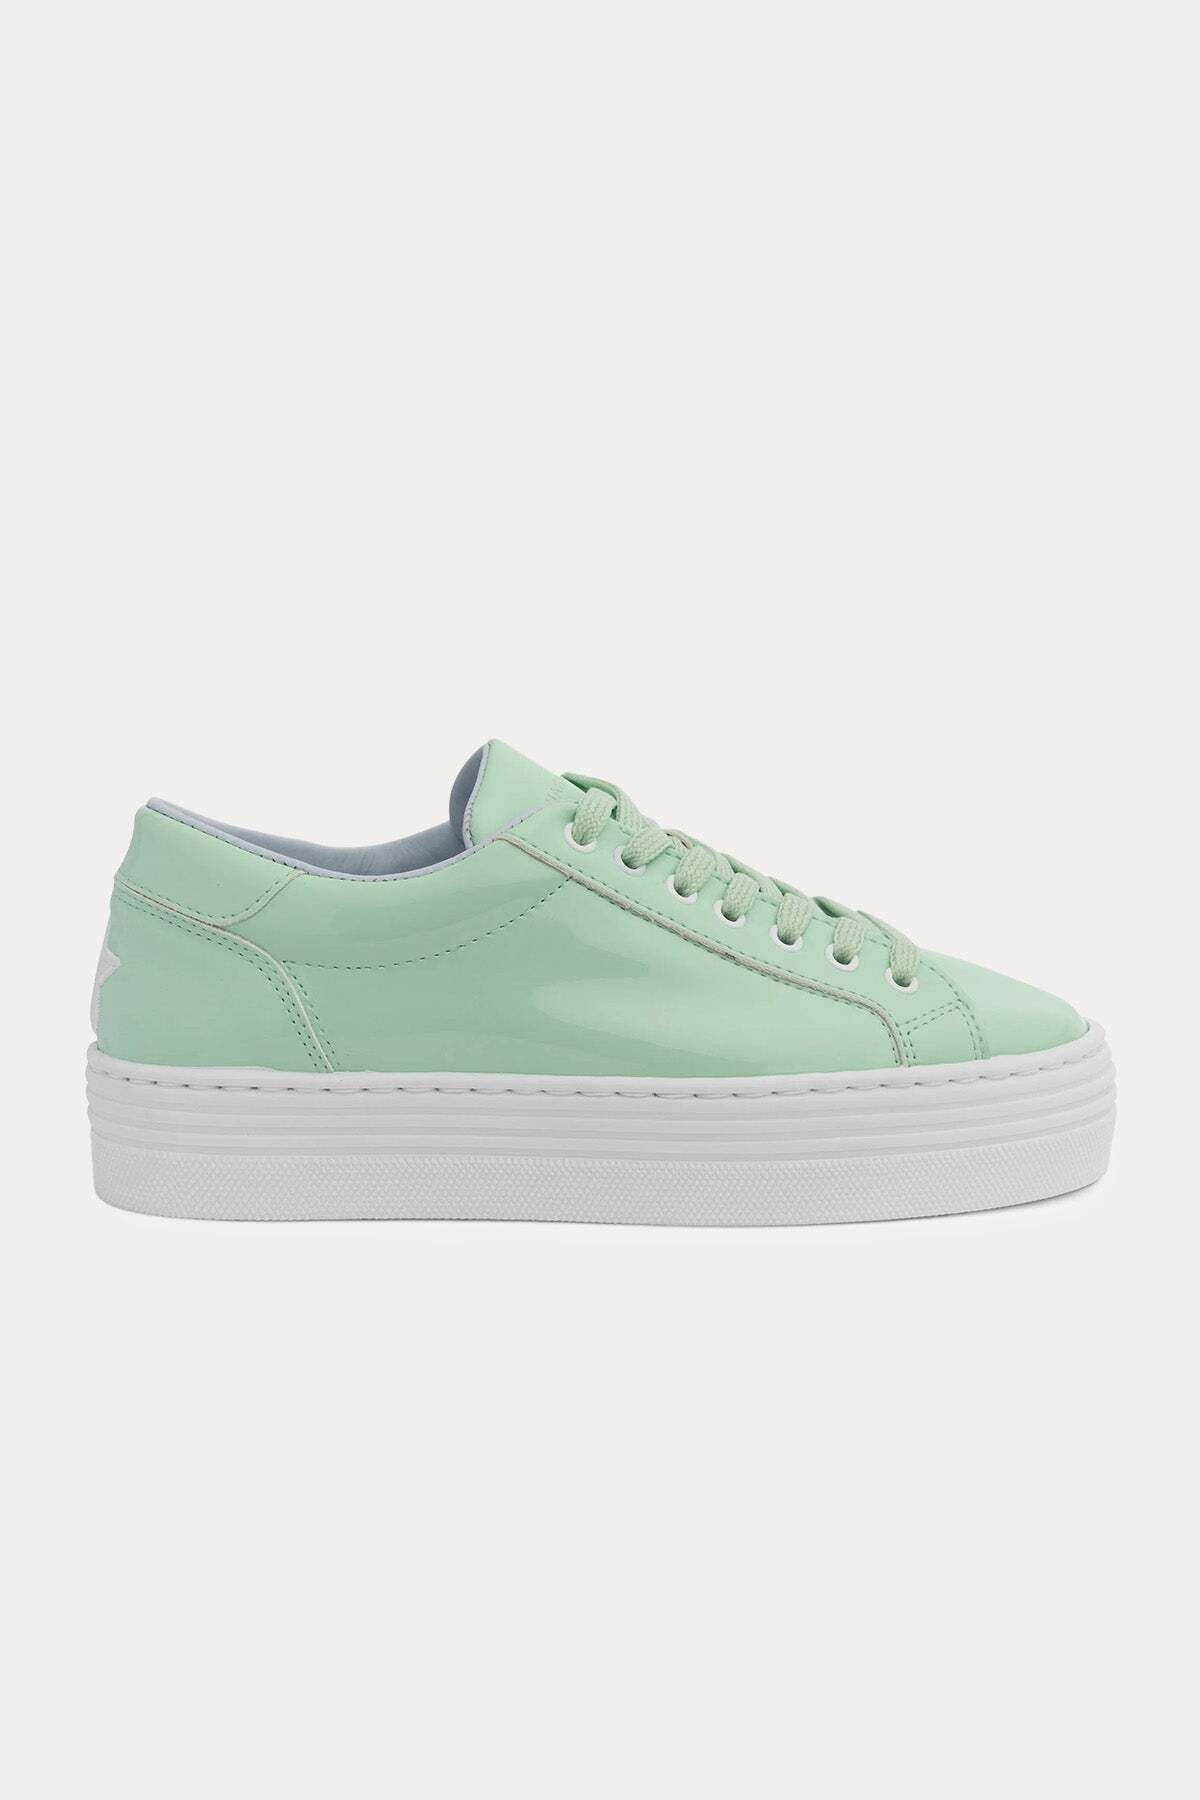 CHIARA FERRAGNI Göz Logolu Sneaker Ayakkabı 40 / Yeşil